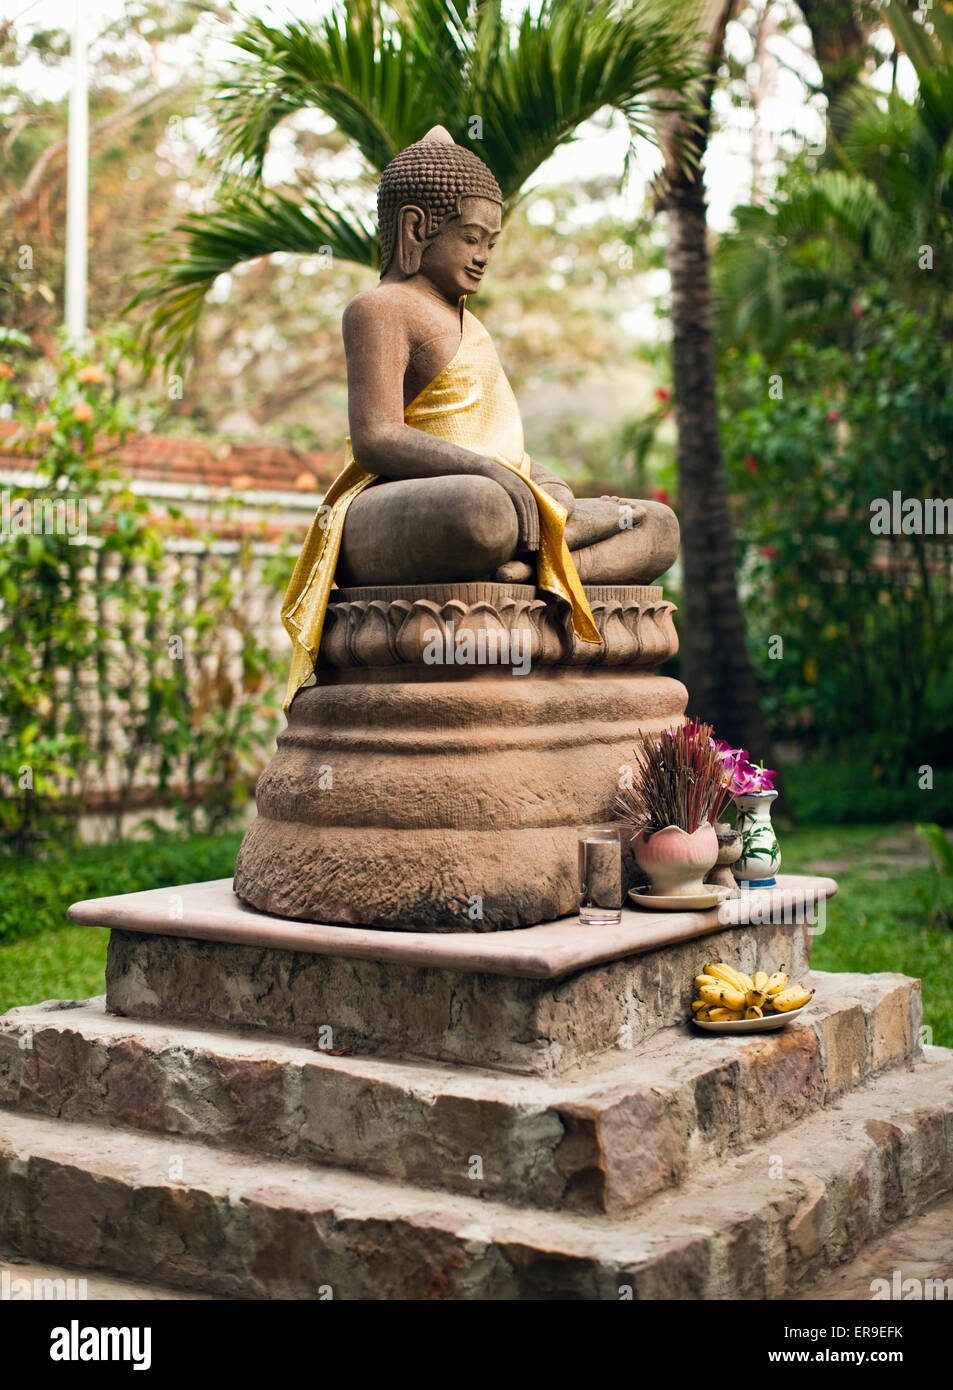 Statues de Bouddha dans la station jardin de la residence d'Angkor, Siem Reap, Cambodge. Banque D'Images